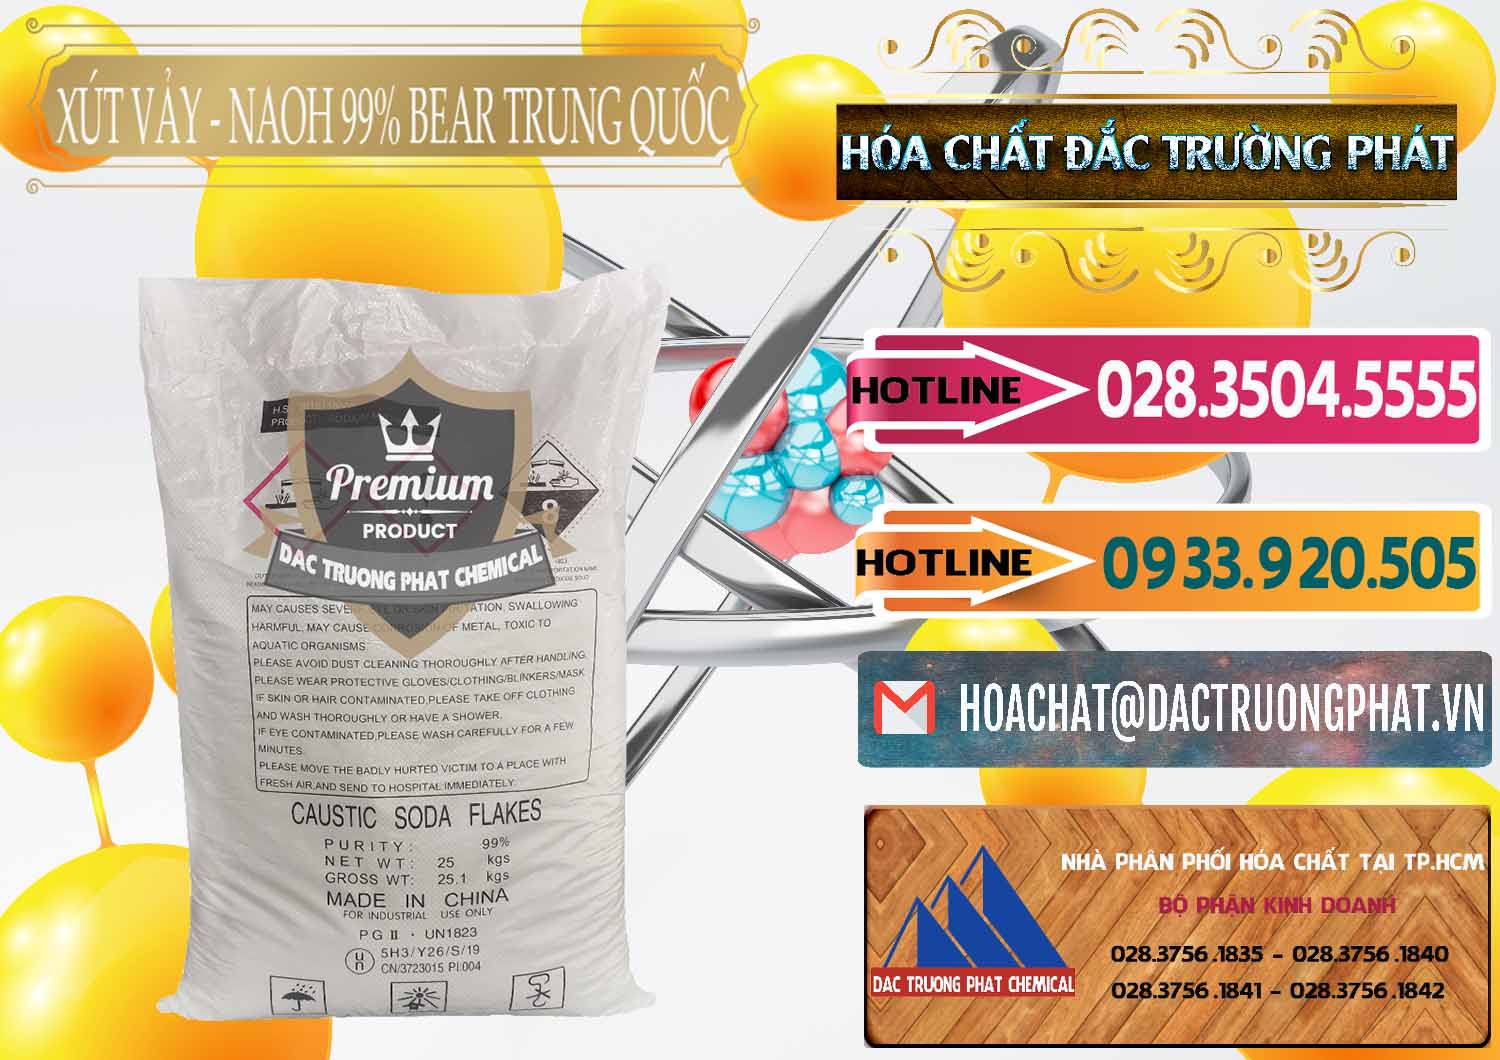 Đơn vị nhập khẩu _ bán Xút Vảy - NaOH Vảy 99% Bear Sơn Đông Trung Quốc China - 0175 - Chuyên kinh doanh & phân phối hóa chất tại TP.HCM - dactruongphat.vn